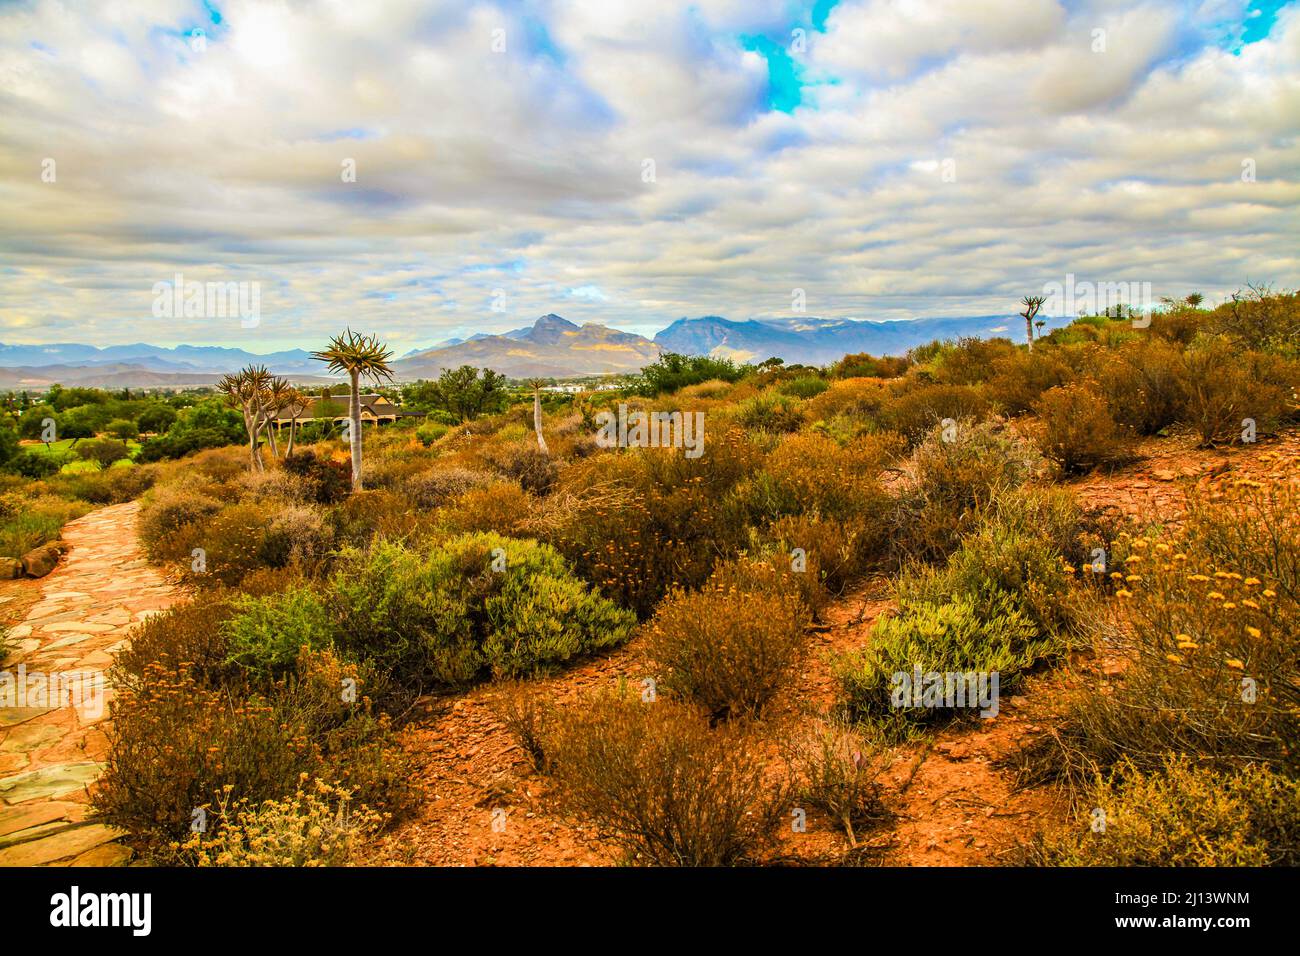 Jardins botaniques nationaux du désert de Karoo avec des sucudents, des aloès et des arbres de quiver Banque D'Images